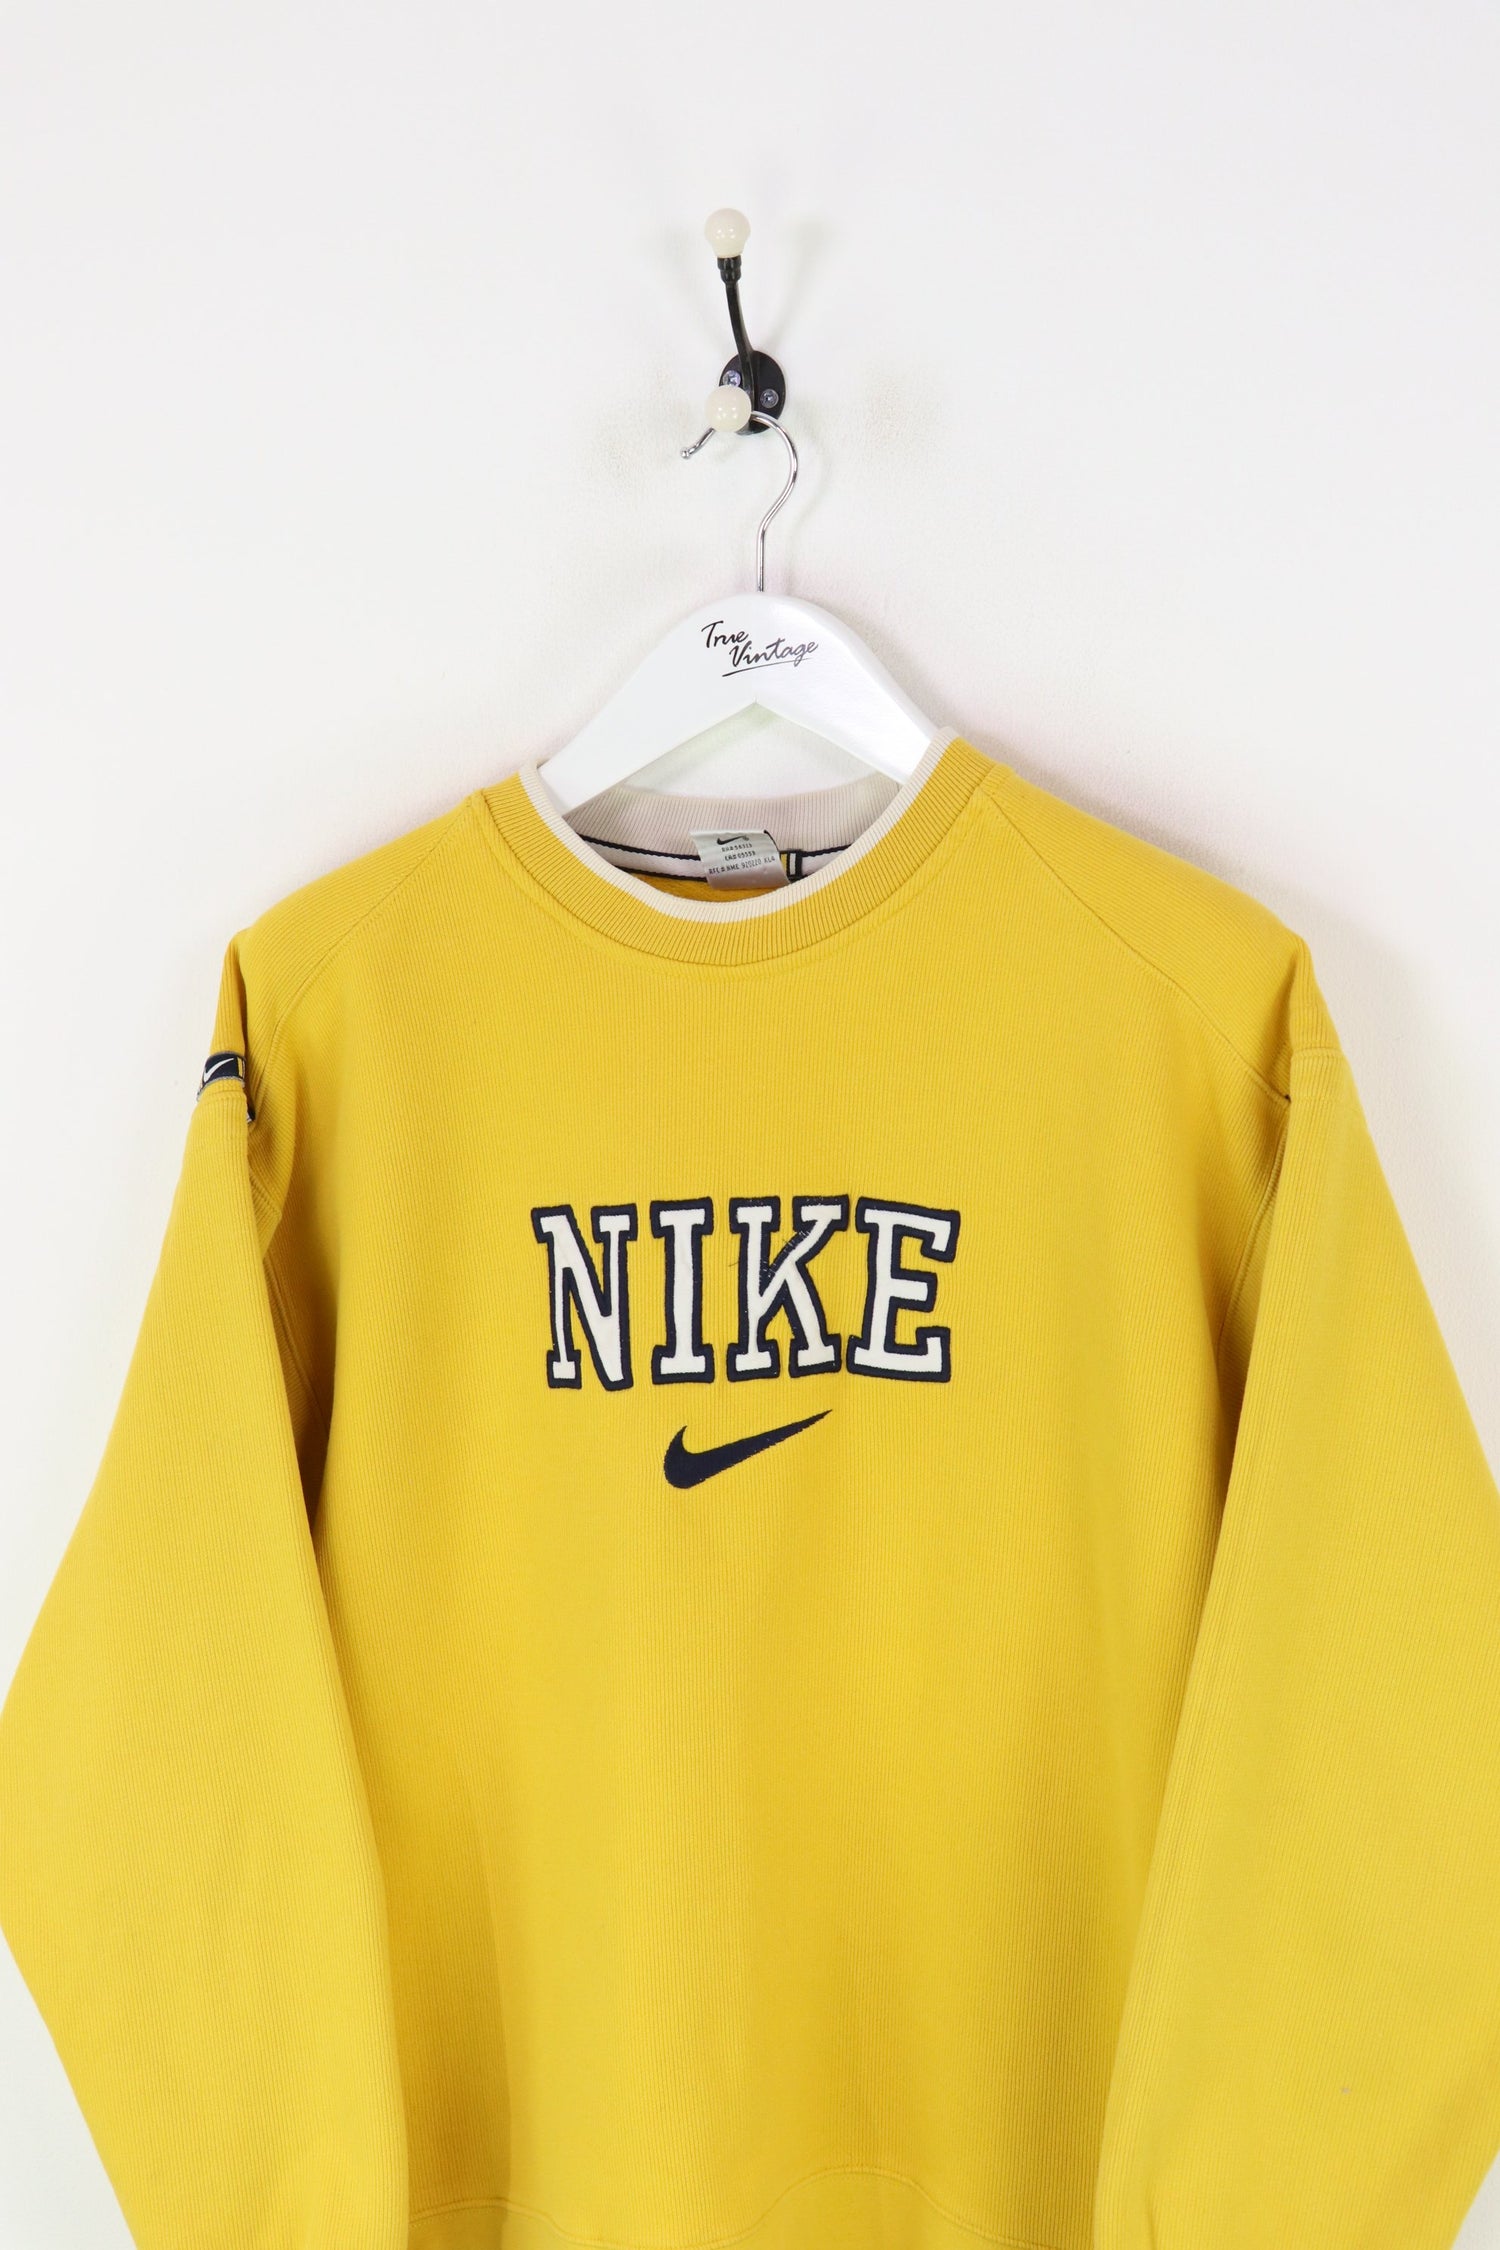 Nike Sweatshirt Yellow Large